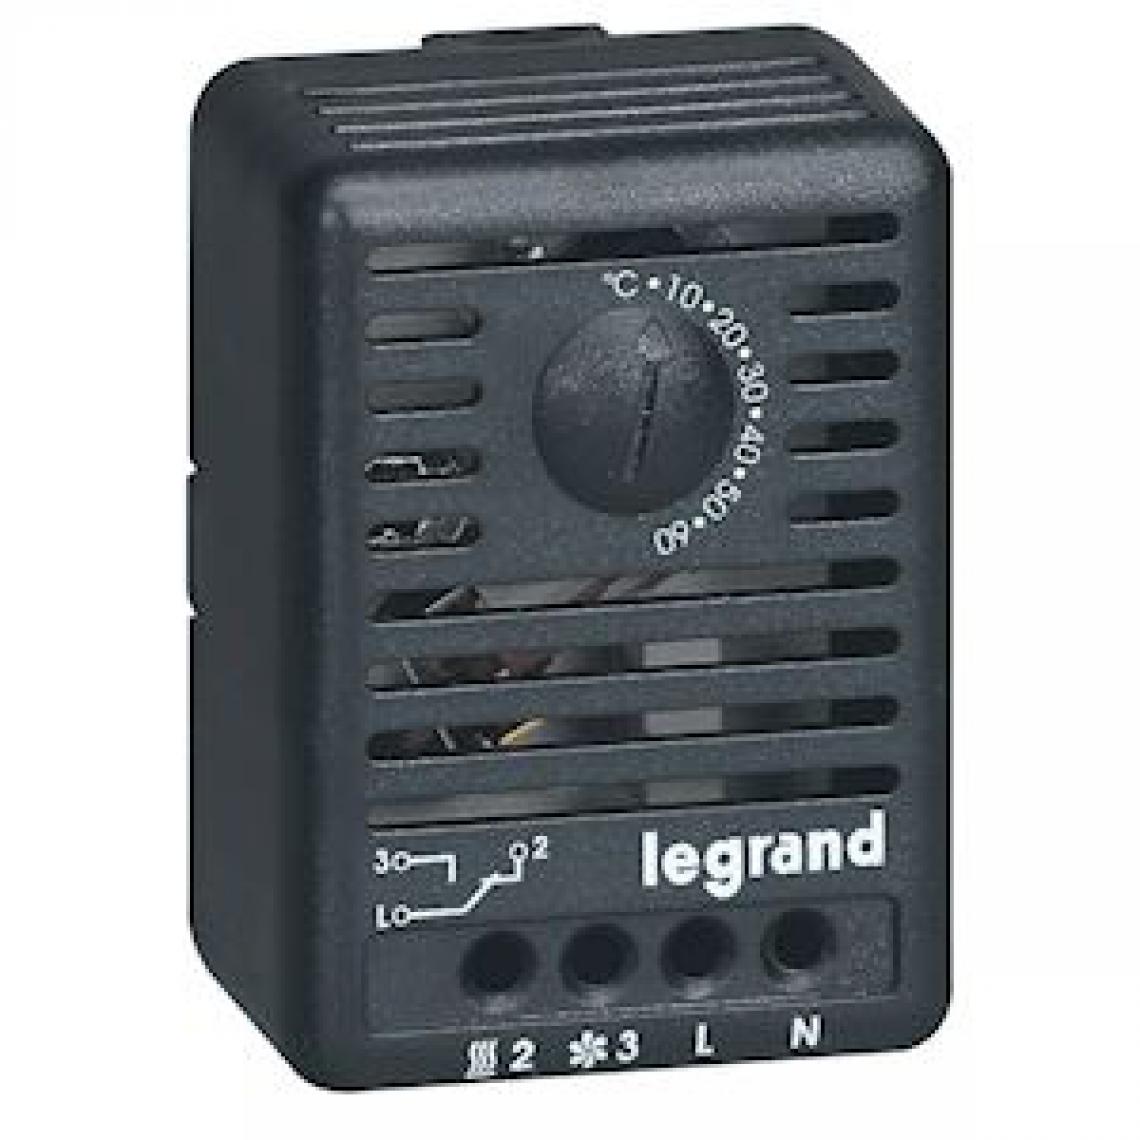 Legrand - thermostat d'ambiance - pour coffret ou armoire - fixation sur rail - legrand 034847 - Autres équipements modulaires